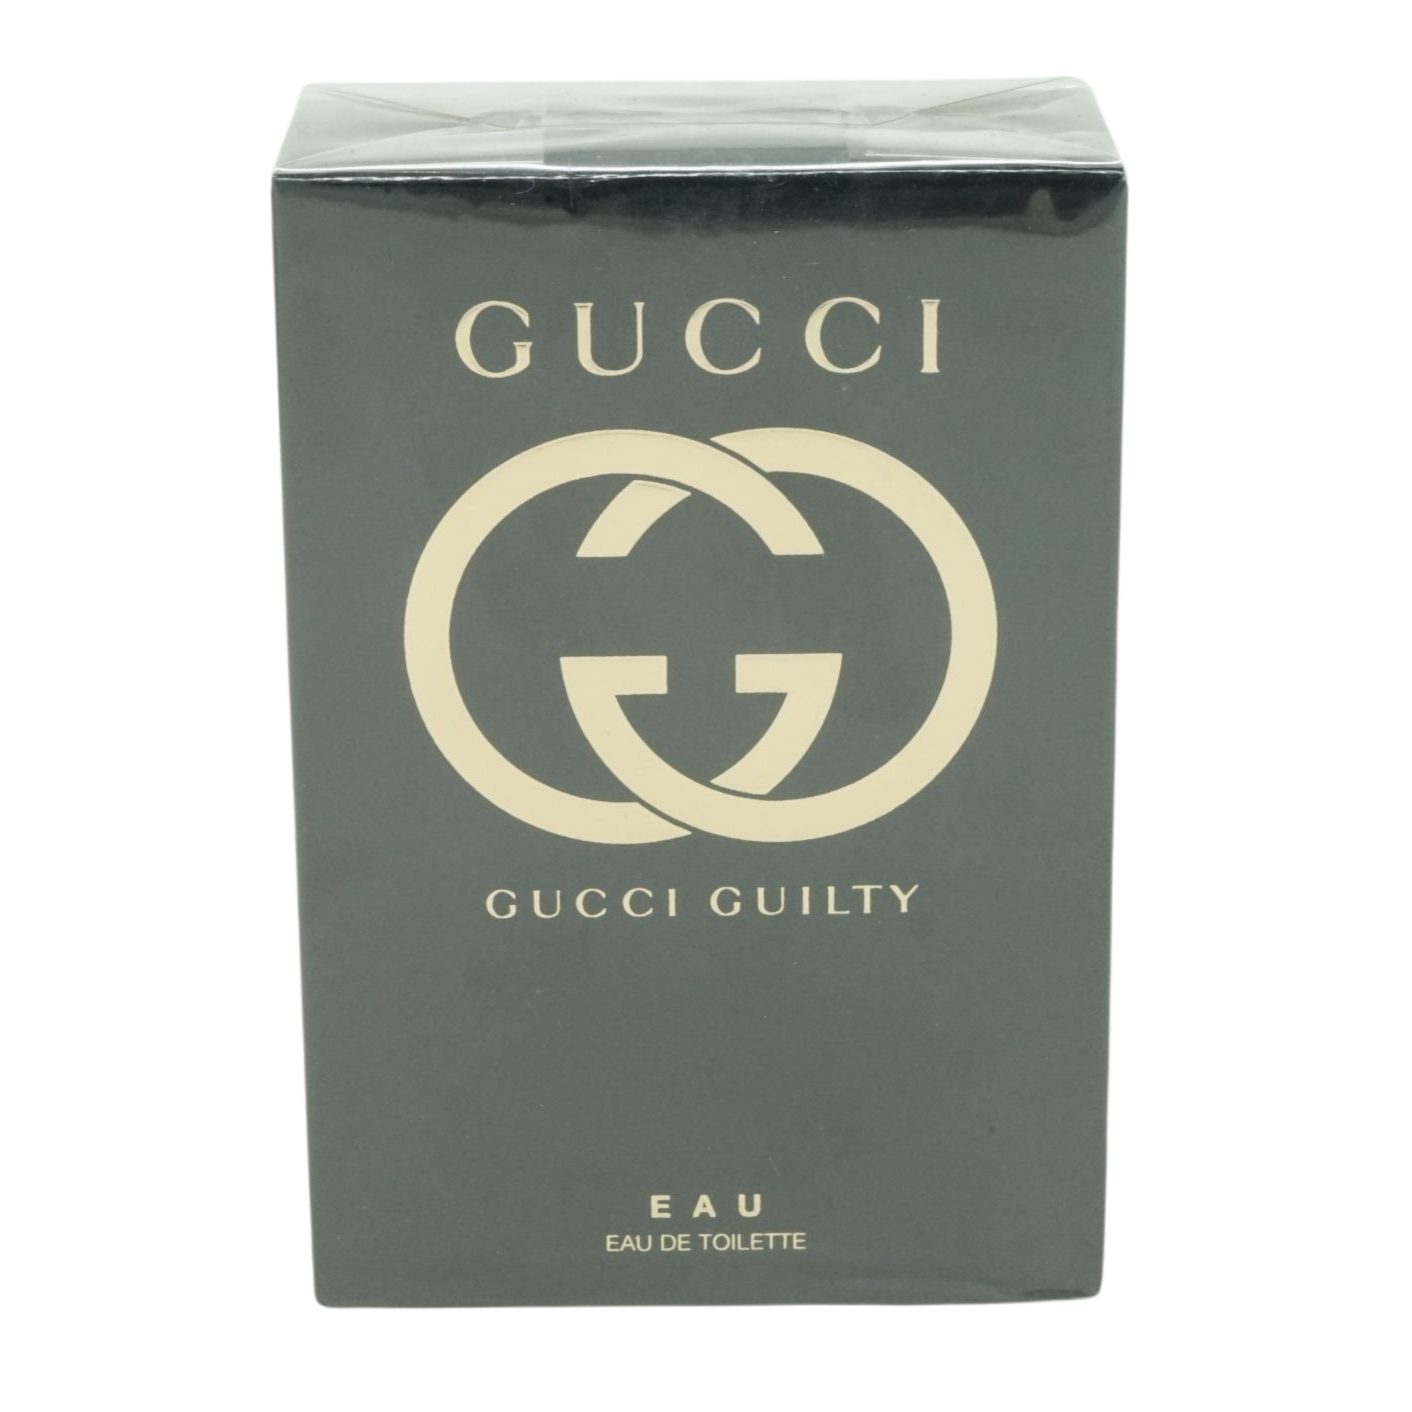 Guilty Gucci Eau Toilette de Eau Toilette 75ml GUCCI de